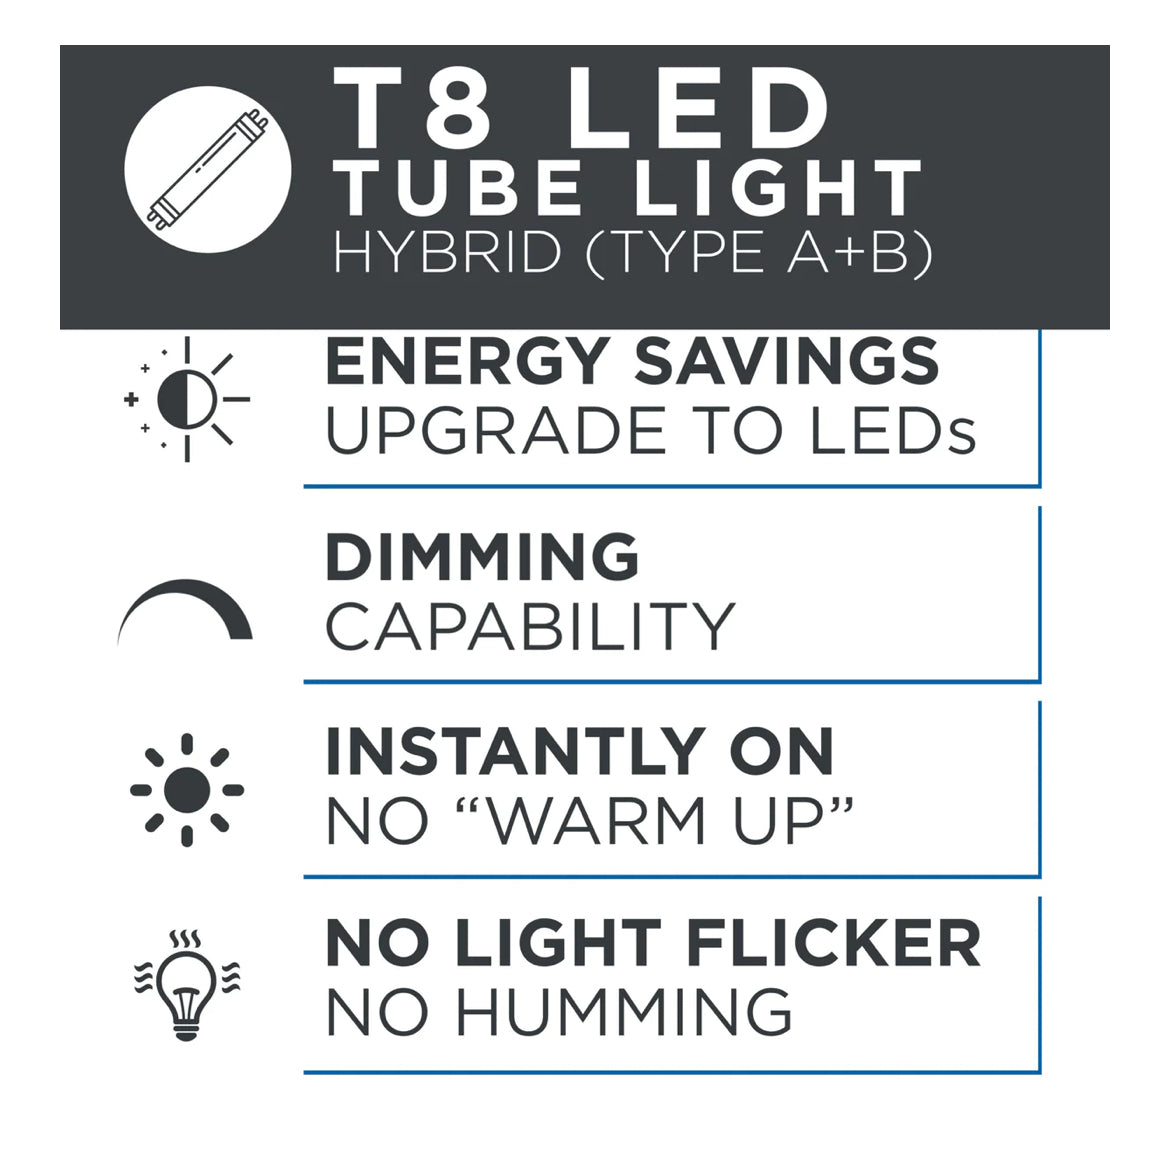 Phos Light 18W Hybrid CCT Selectable 4-Foot T8 2450-2700 Lumens LED Light Tube Bulb (20-Pack)